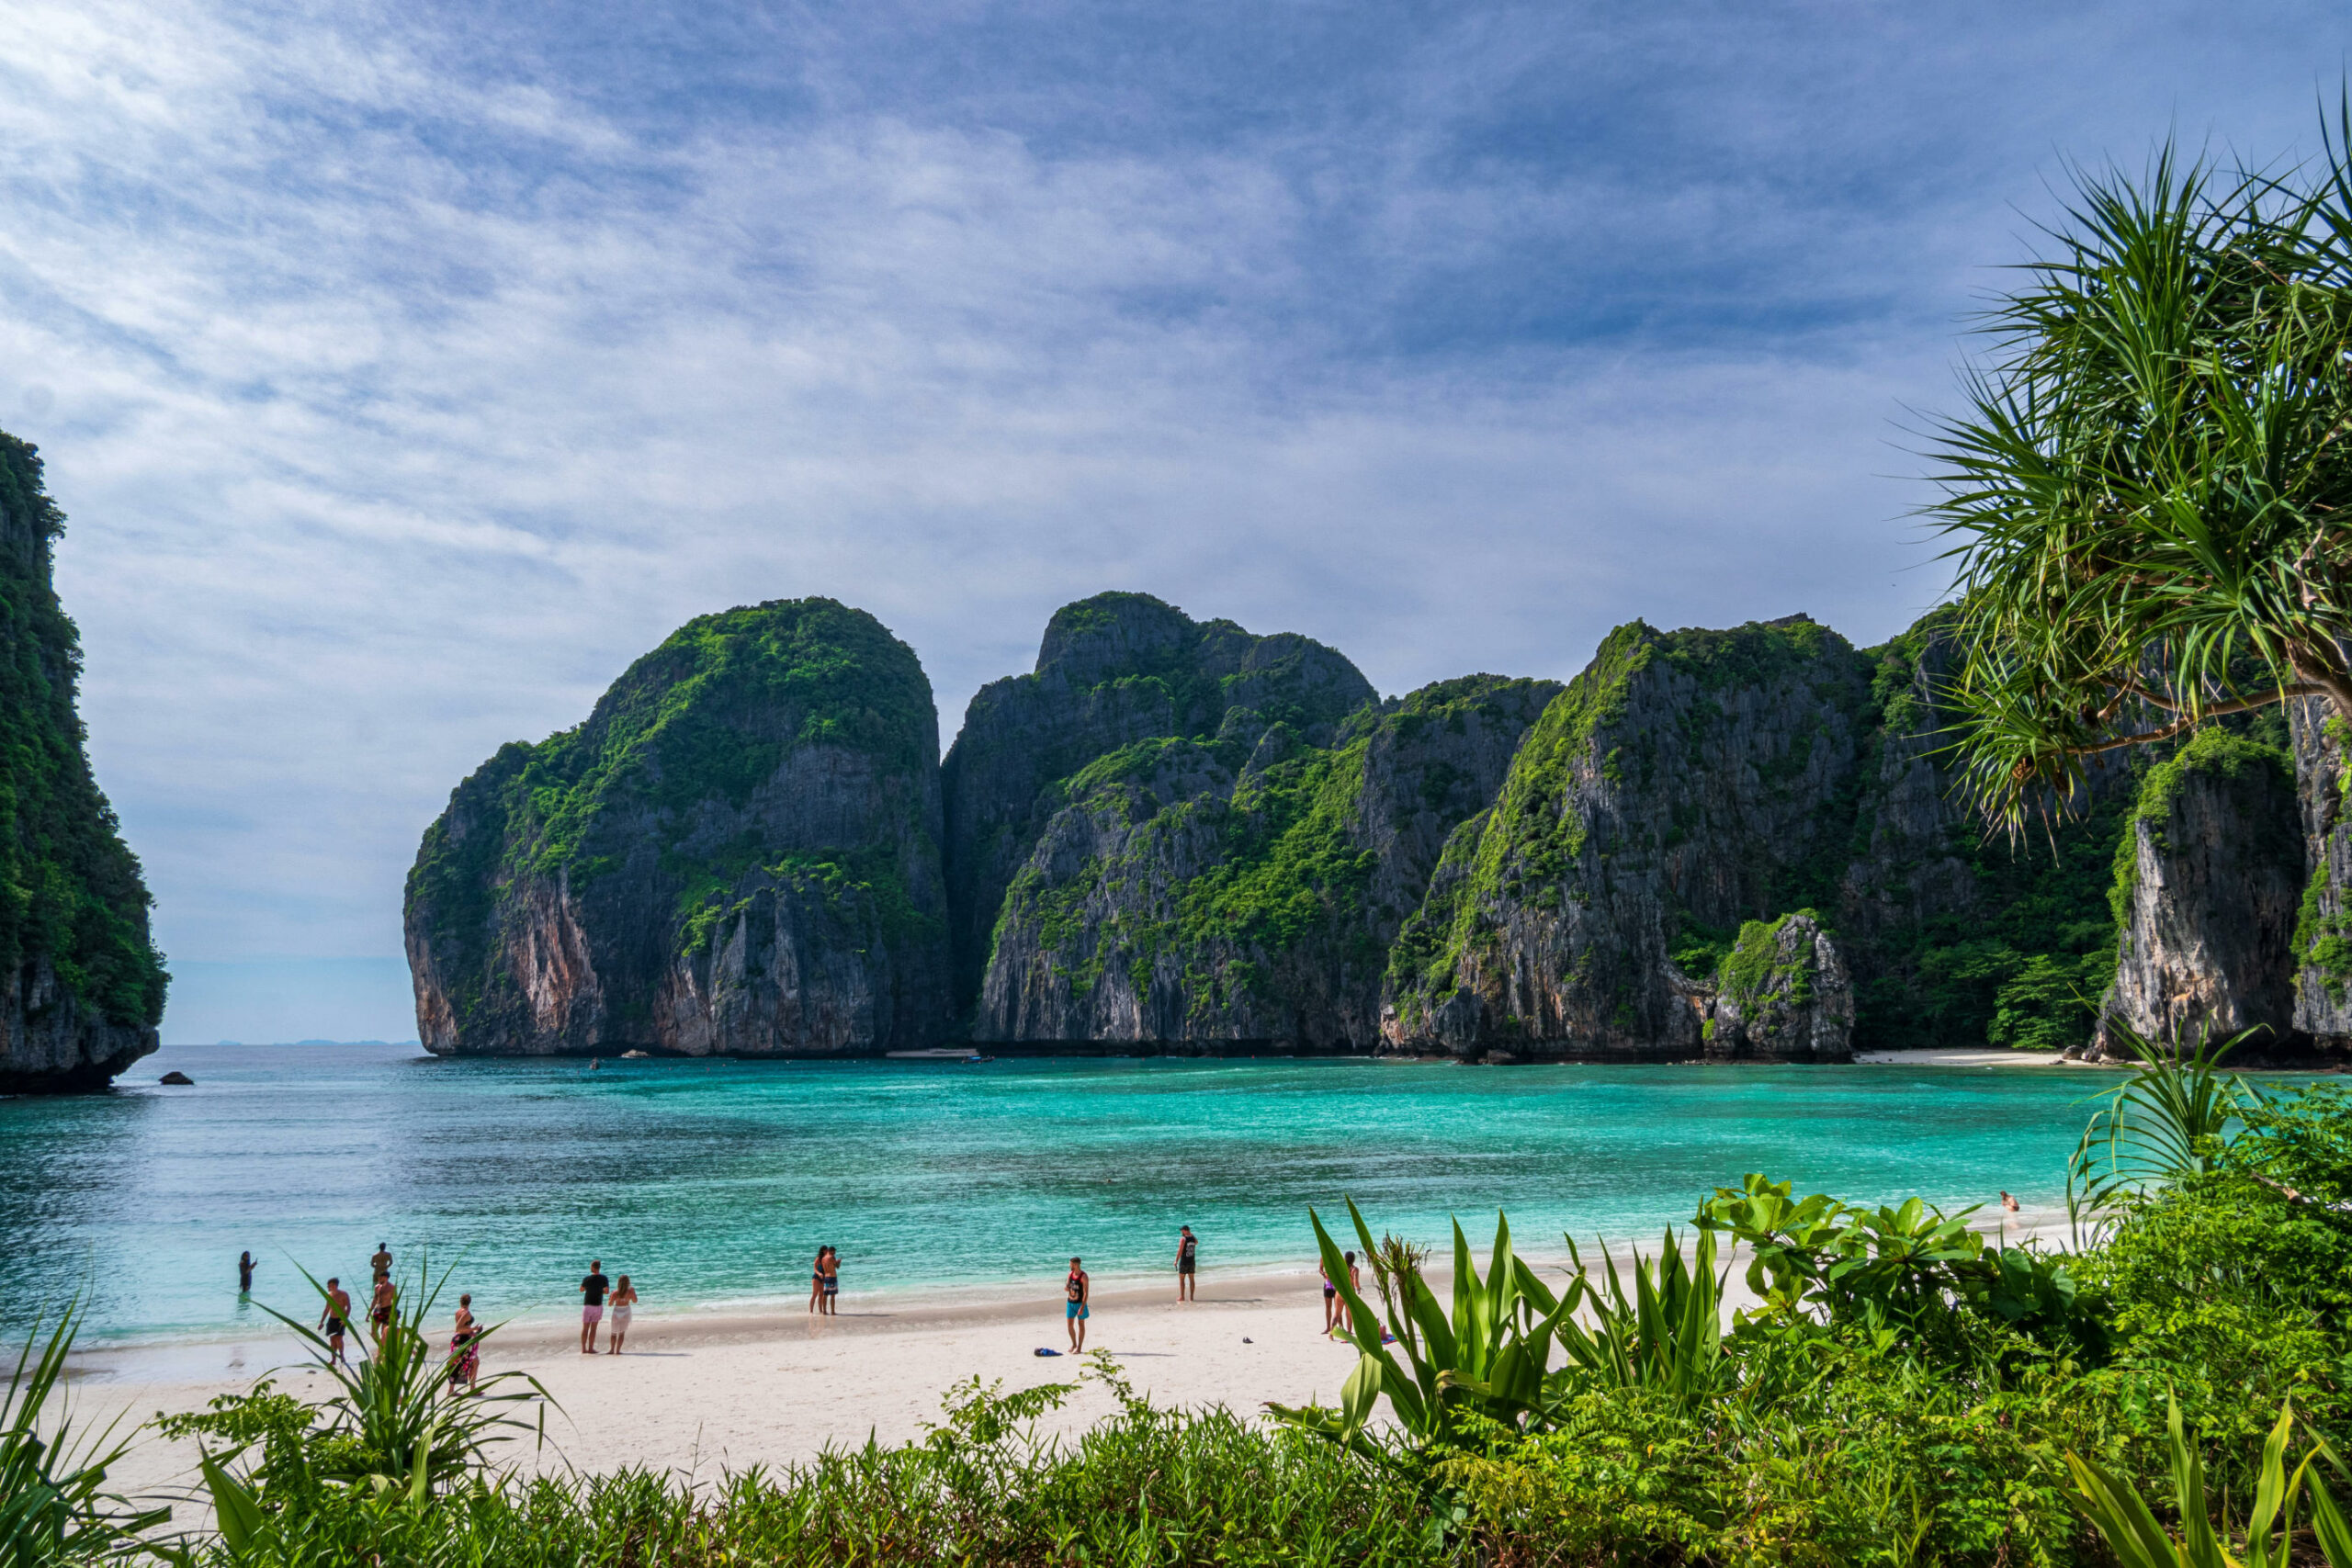 Das Bild zeigt die Maya Bay auf Ko Phi Phi Le. Im Vordergrund sind einige grüne Pflanzen und ein weißer Strand mit Touristen zu sehen. Dahinter sind das türkisfarbene Meer und große Felsformationen mit Pflanzen darauf. Der Himmel ist blau und leicht bewölkt.